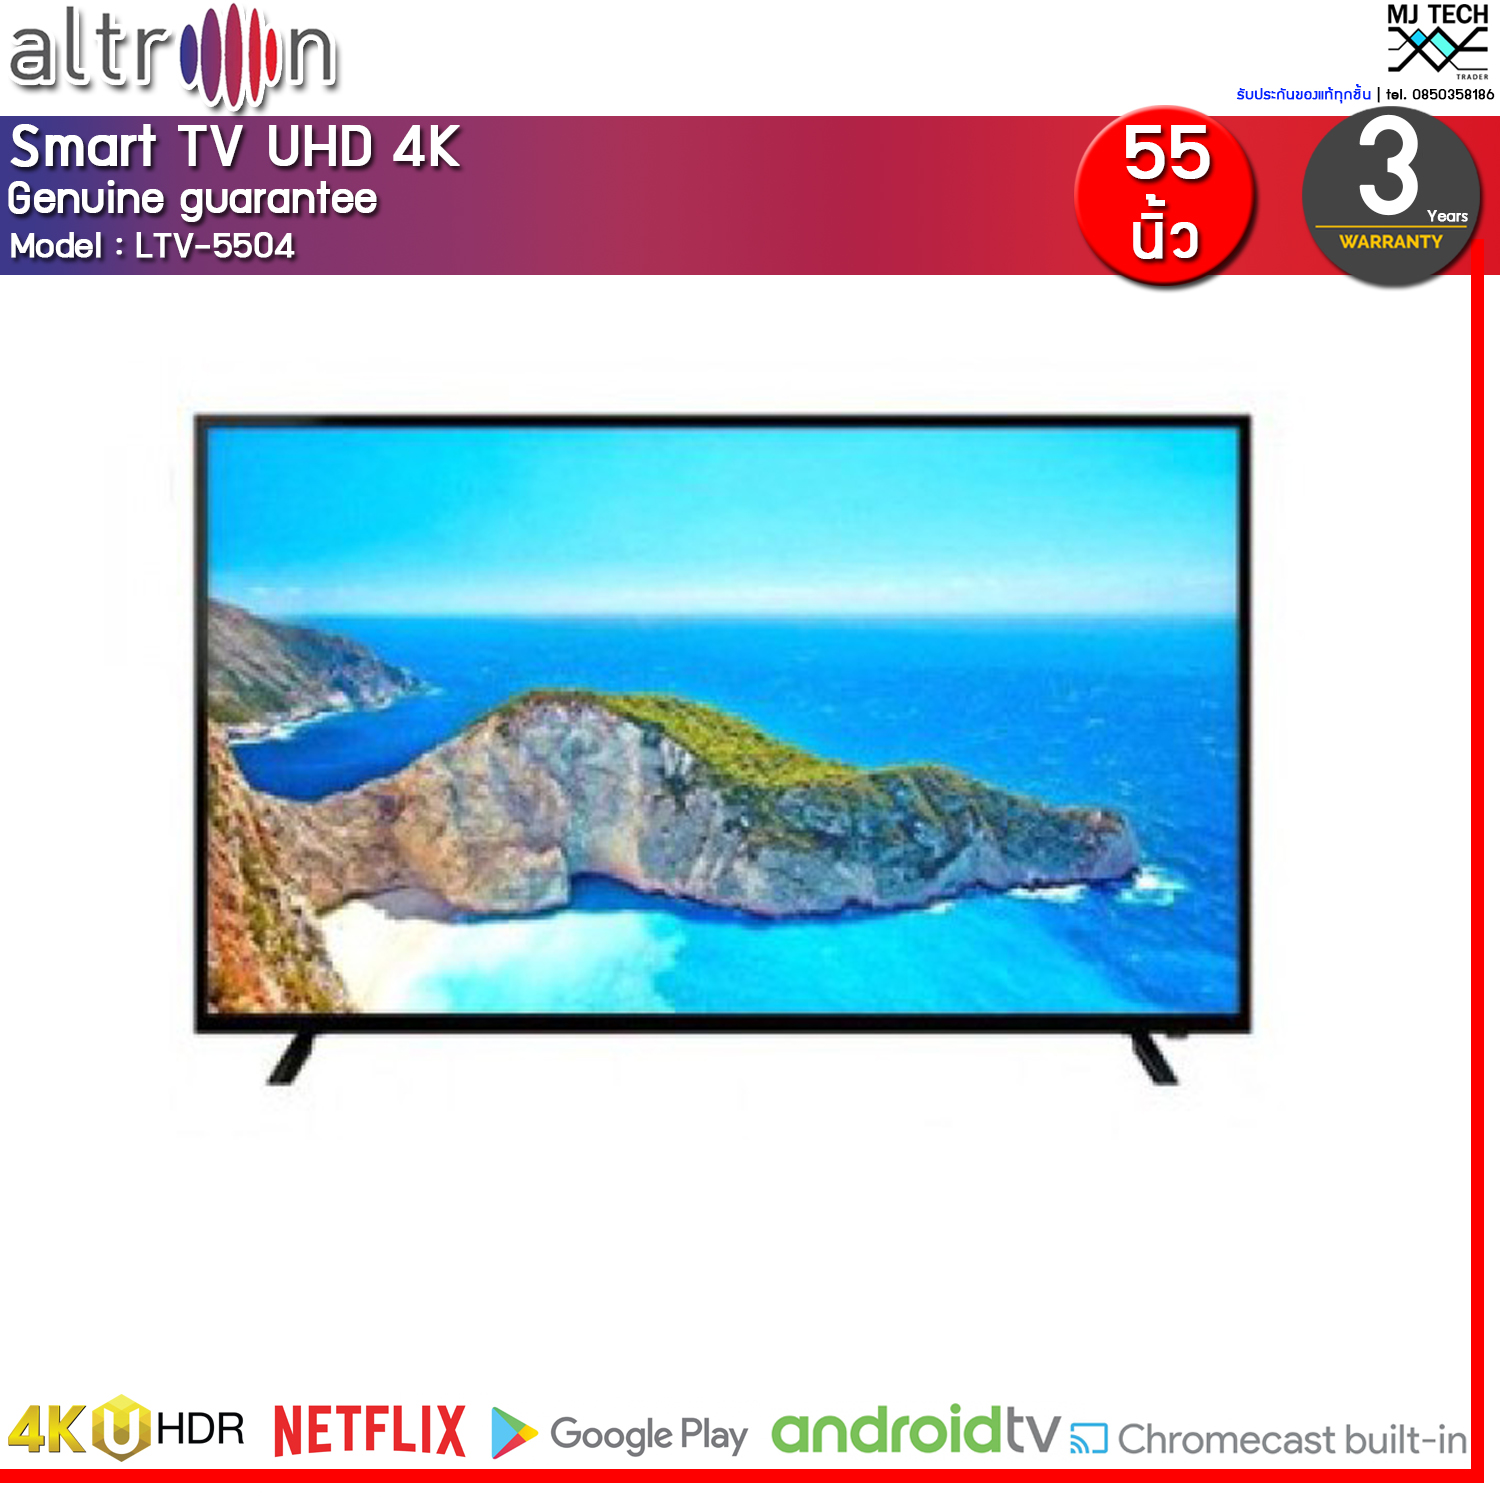 ALTRON TV UHD LED (55